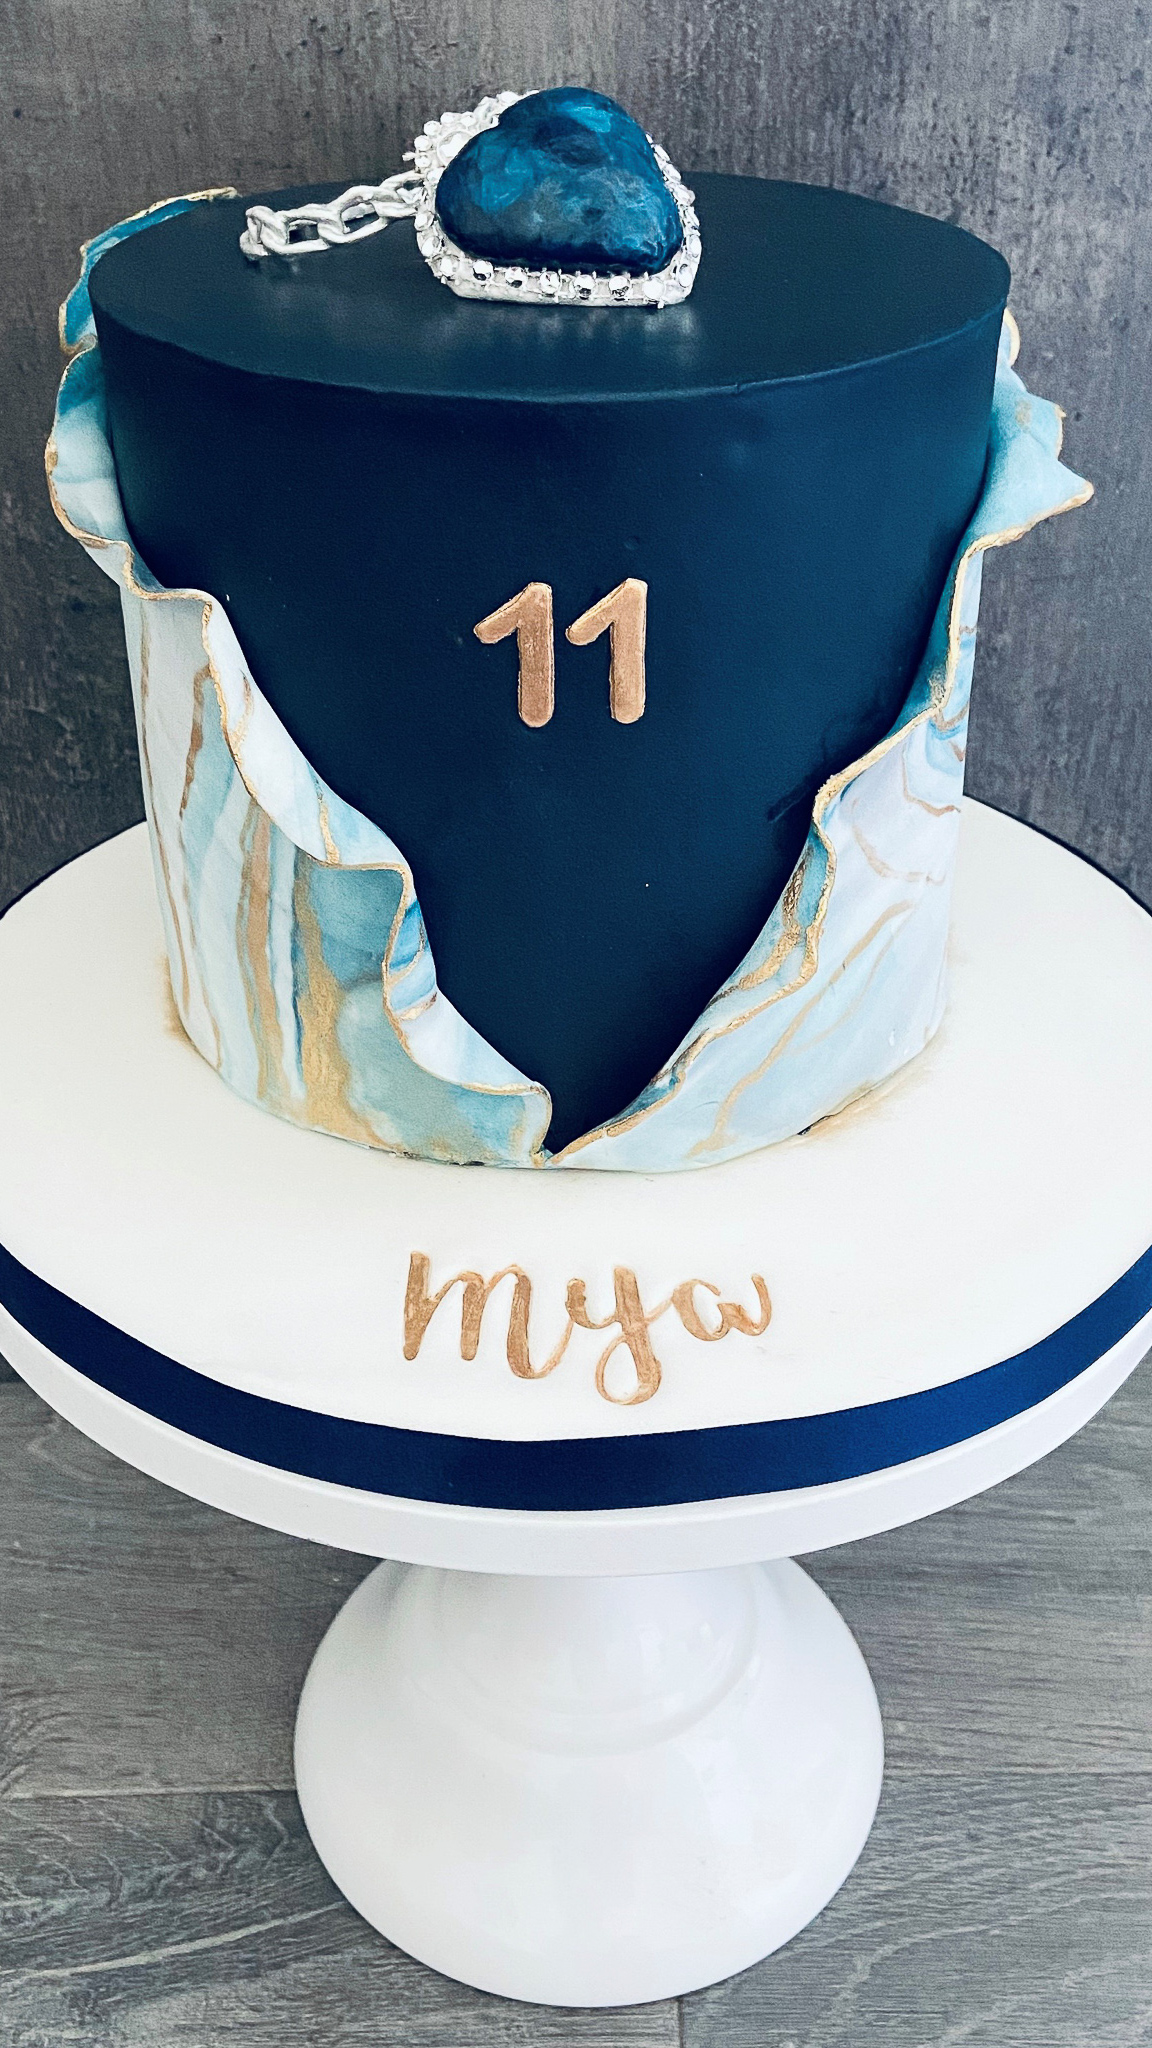 Titanic themed stylish cake with marble wrap